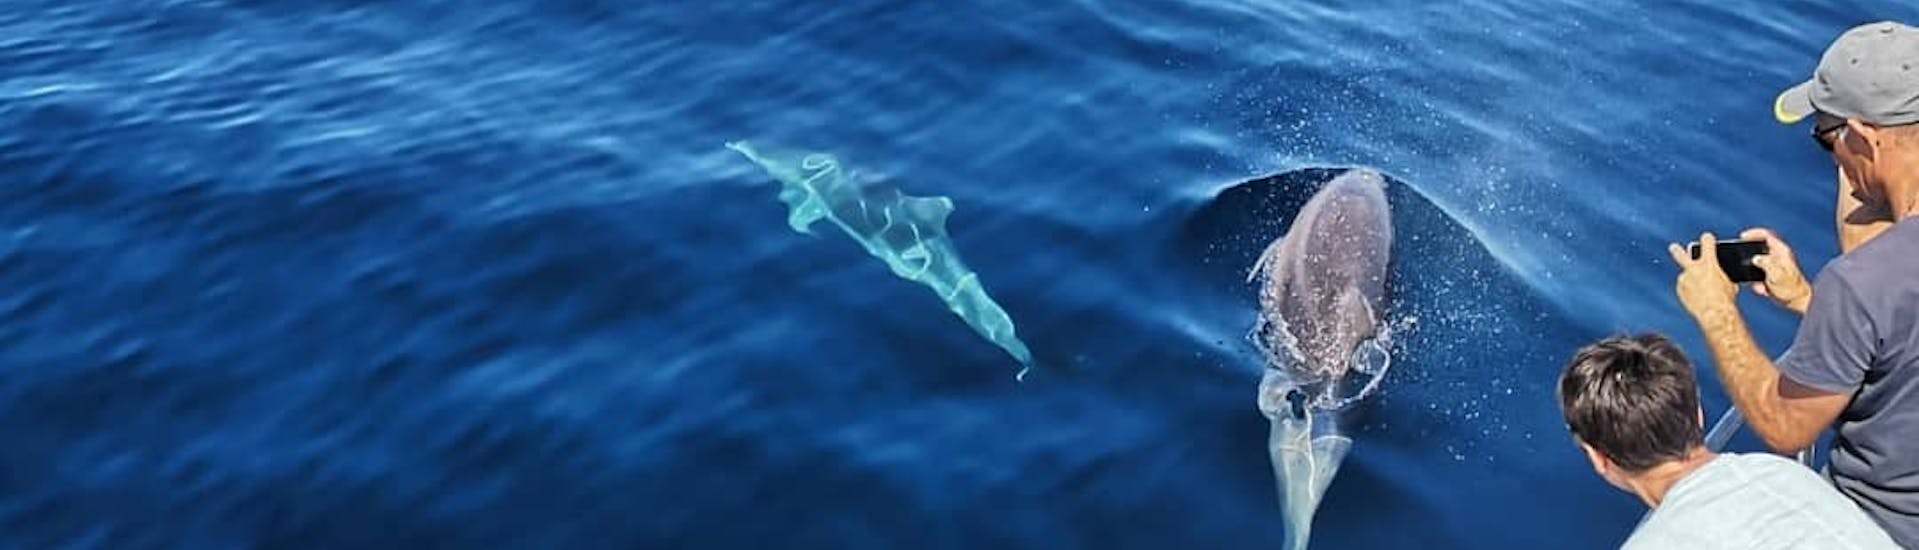 I delfini del Giro in barca da Murter con avvistamento delfini e sosta per nuotare con Dolphin Watching Murter.